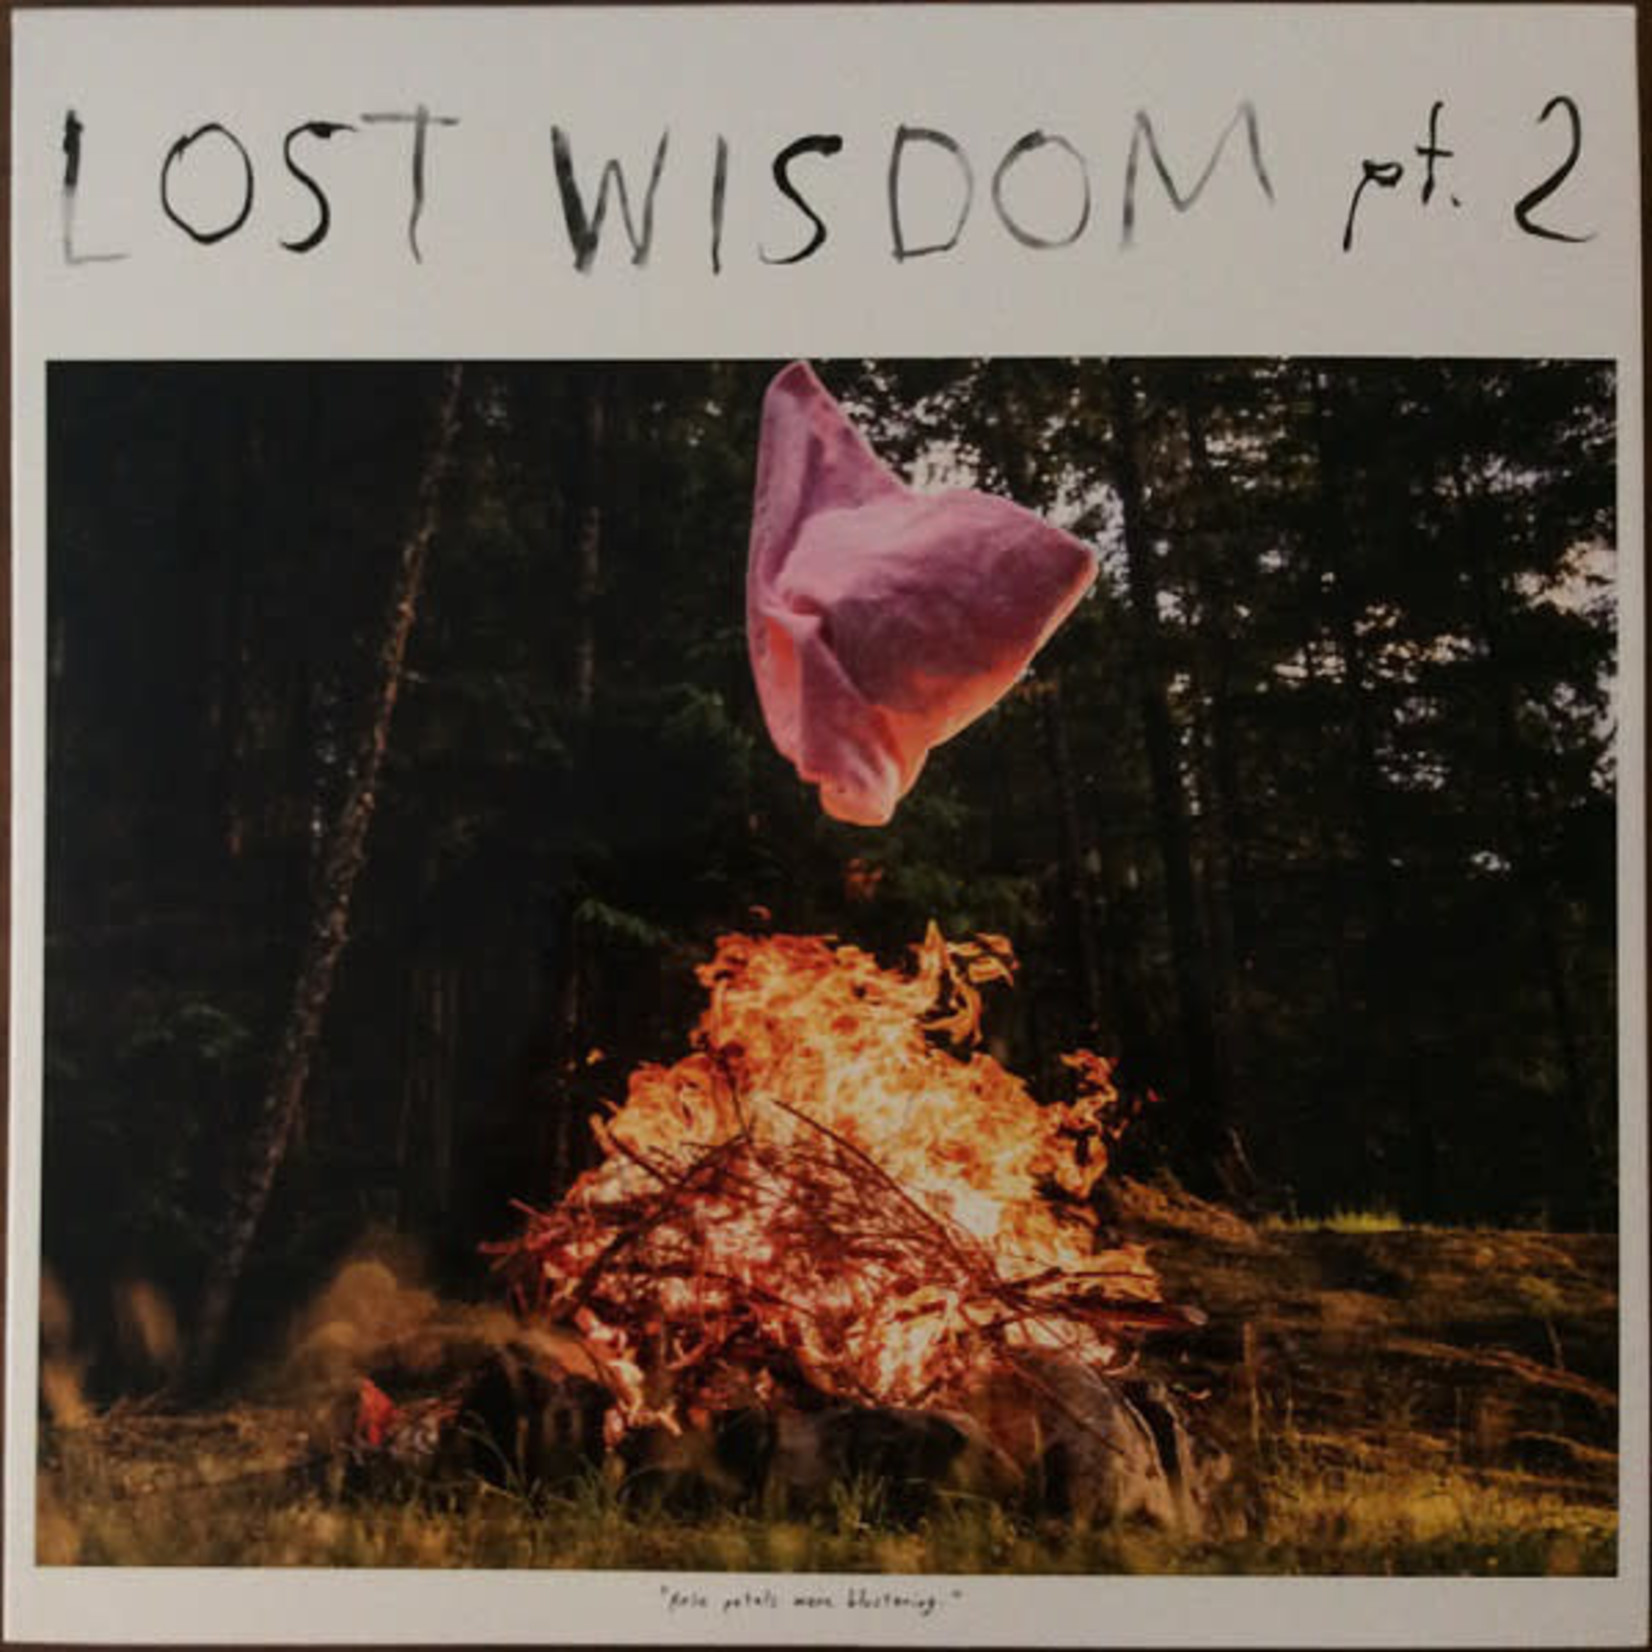 PW Elverum & Sun Mount Eerie & Julie Doiron - Lost Wisdom Pt 2 (LP)